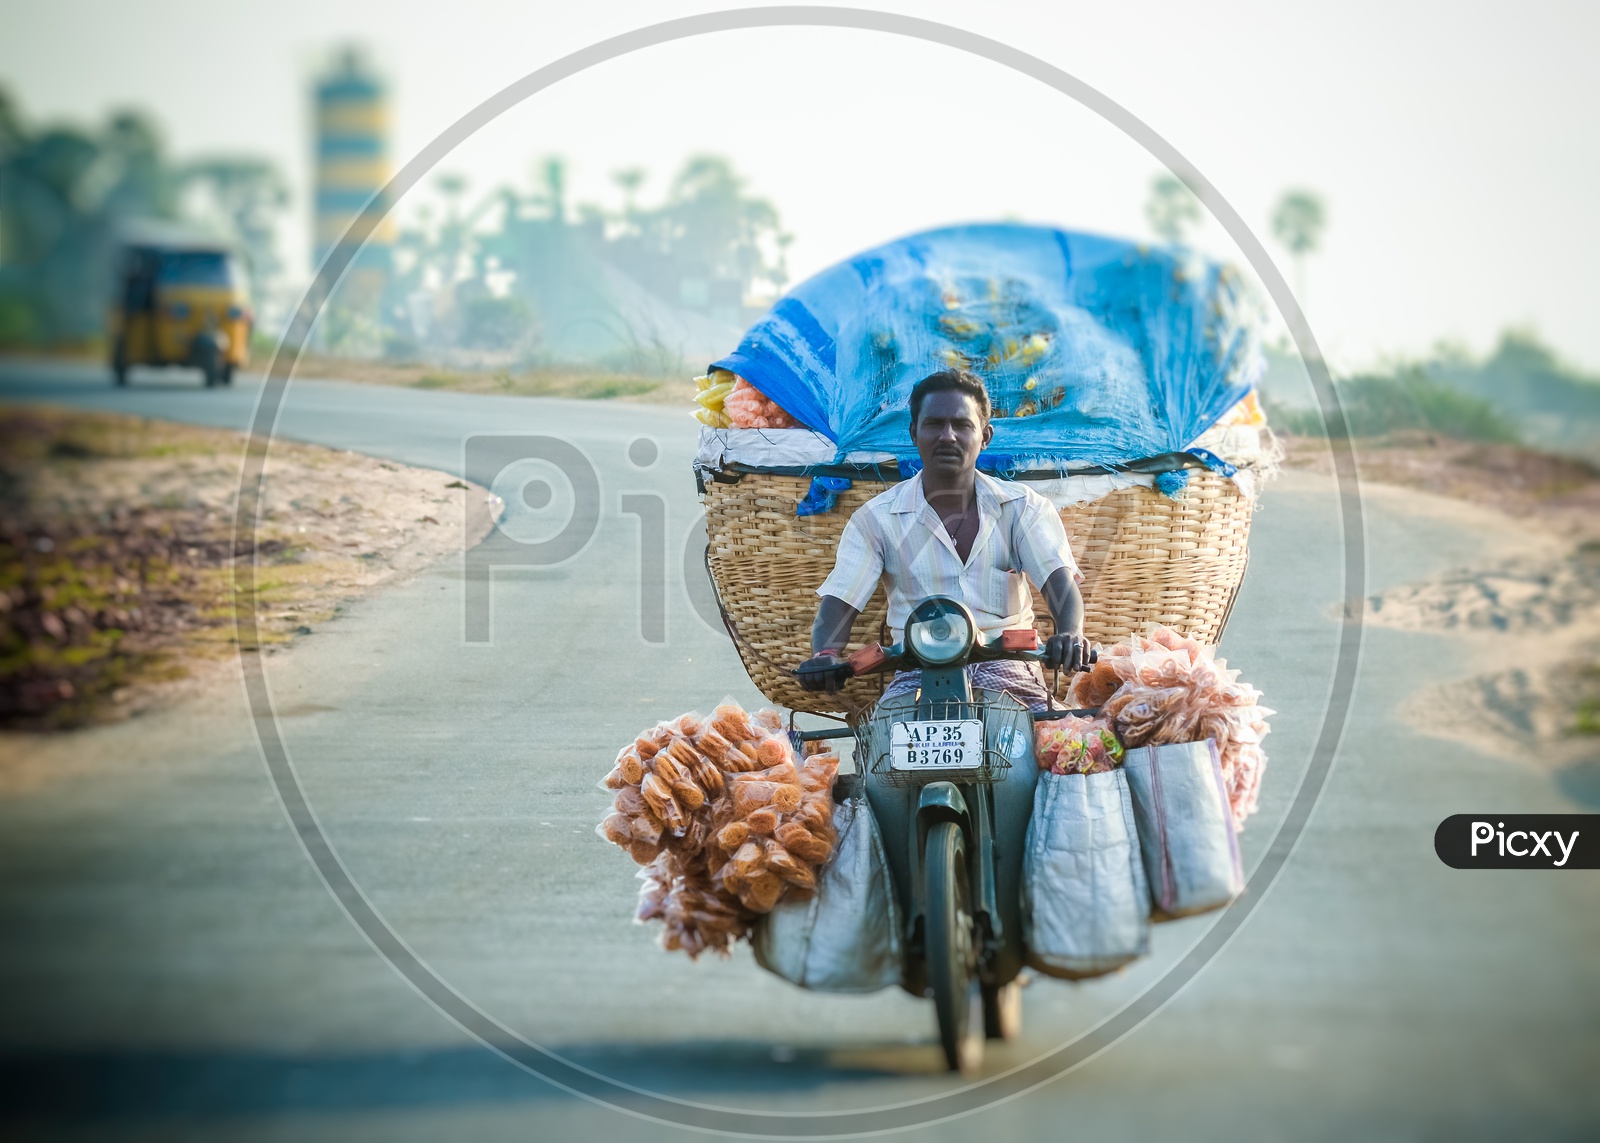 Vendor carrying savories for sale in Bheemli